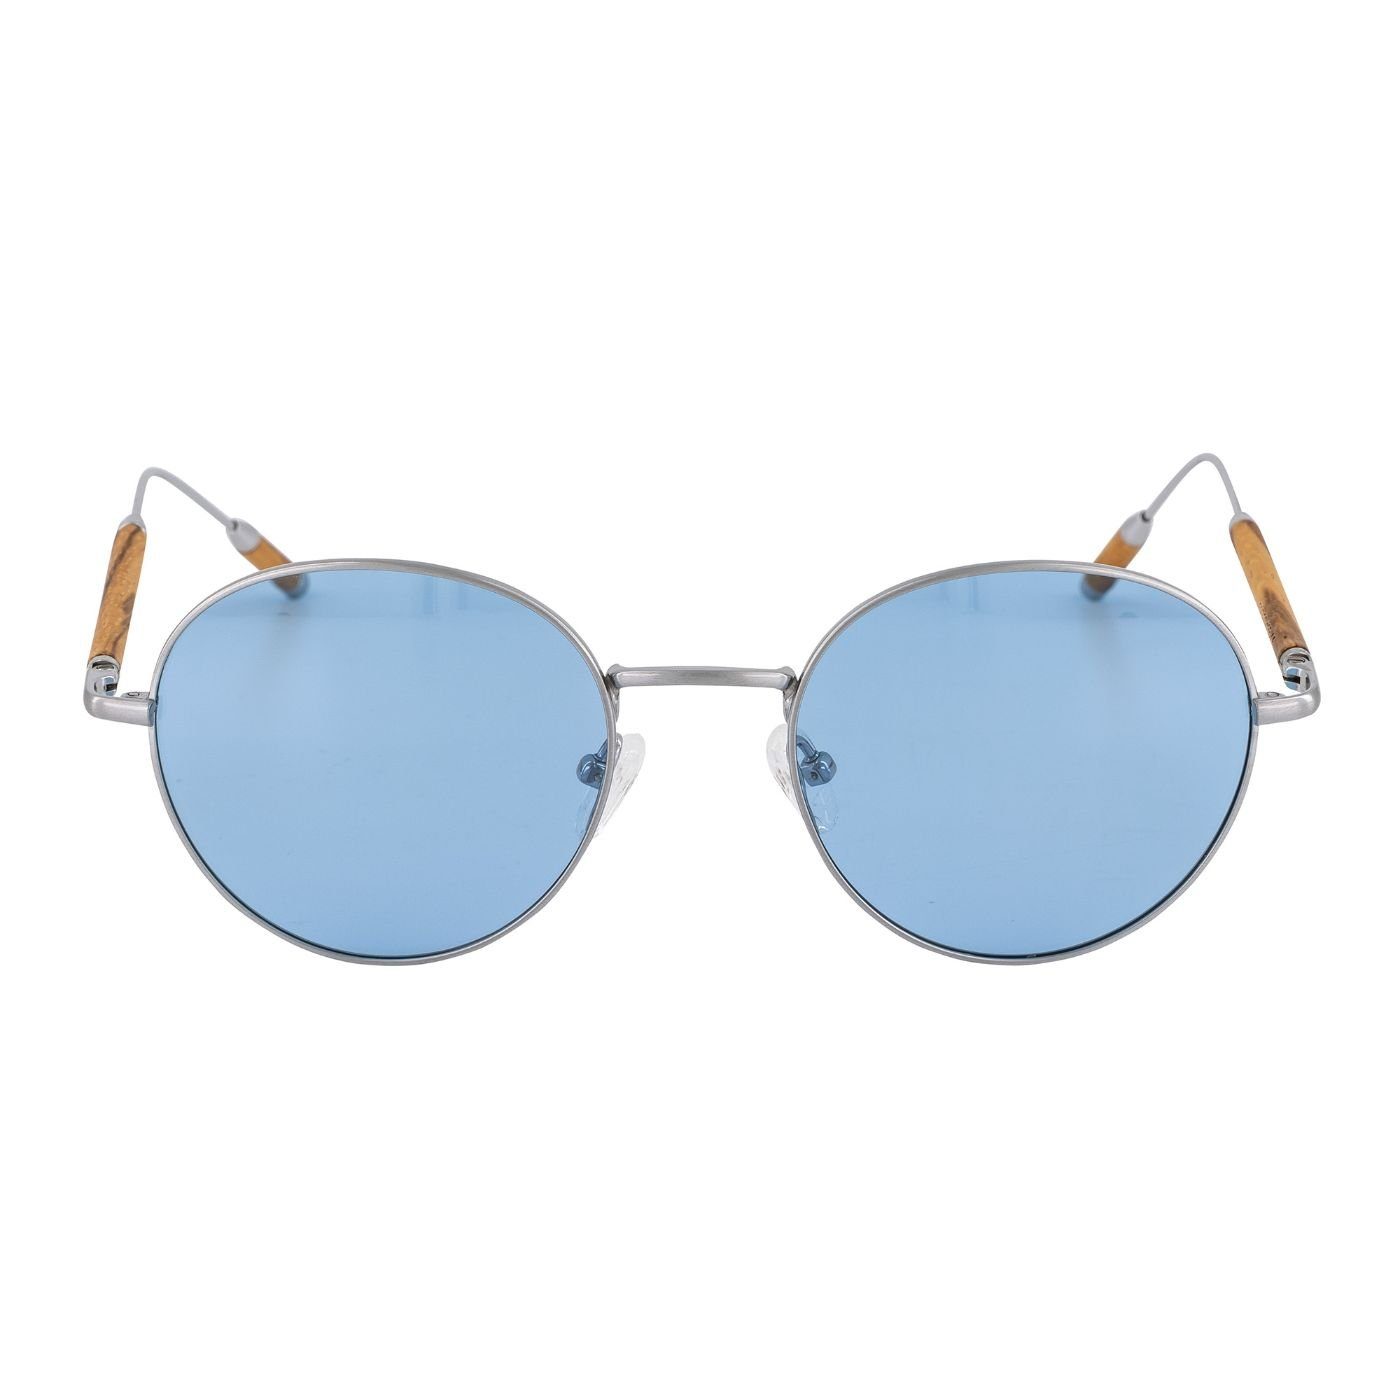 Woodenlove mit Holzelementen Premium Zebrano Sonnenbrille Holz-Sonnenbrille Brillenputztuch Etui) und faltbarem mit Titanbügel Titan (Set,